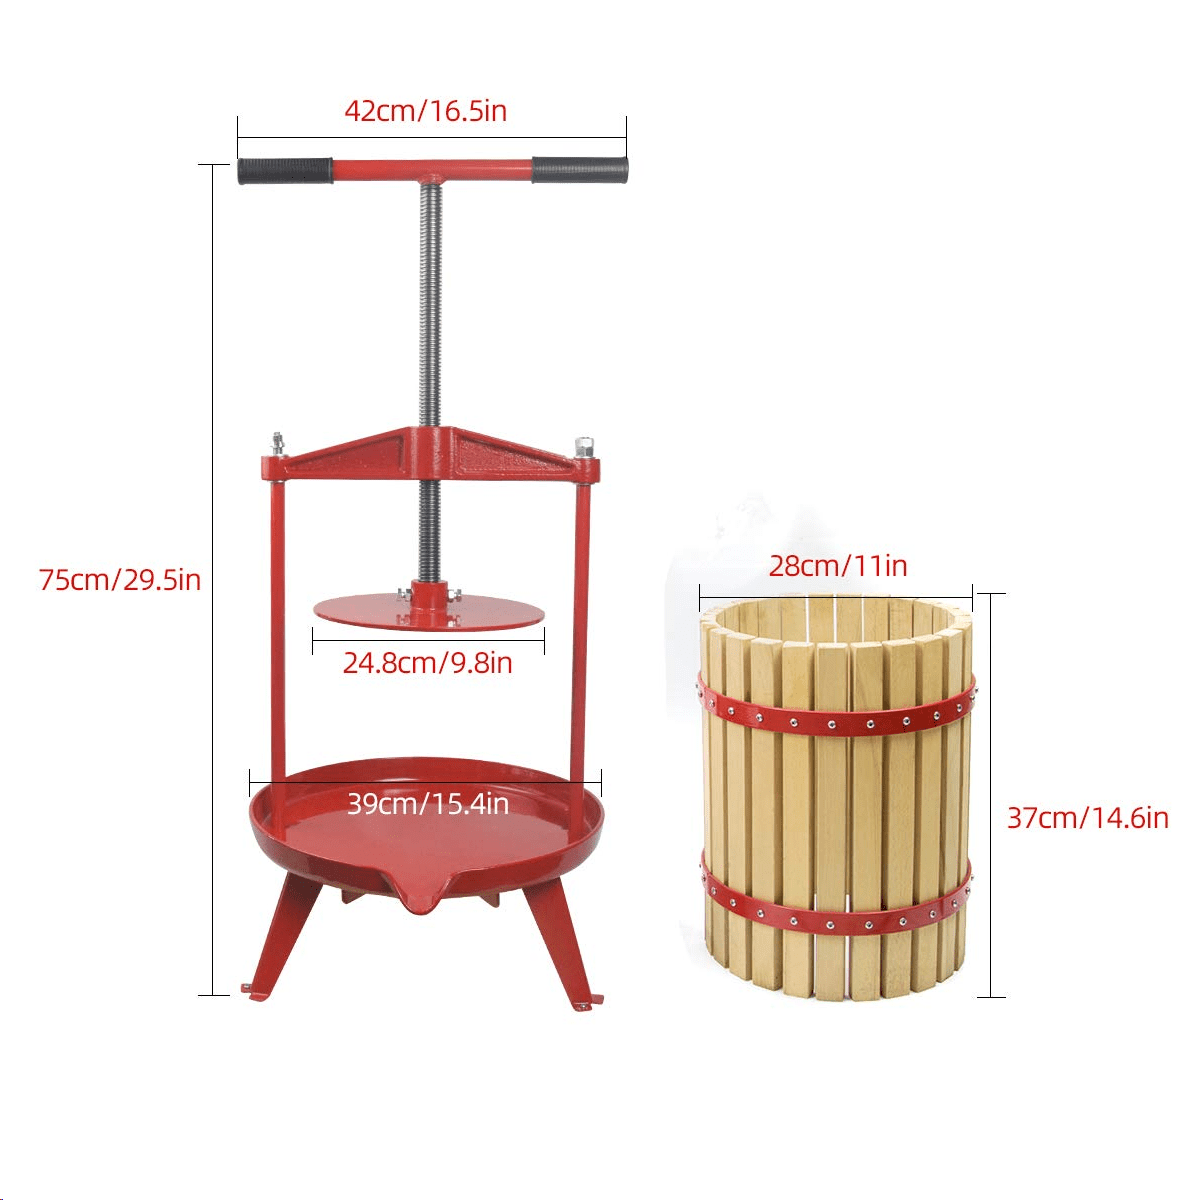 3.17 Gallon/12L-More Stable,Apple Grape Crusher for Juice Maker,Kitchen Solid Wood Basket Fruit Wine Cider Press 